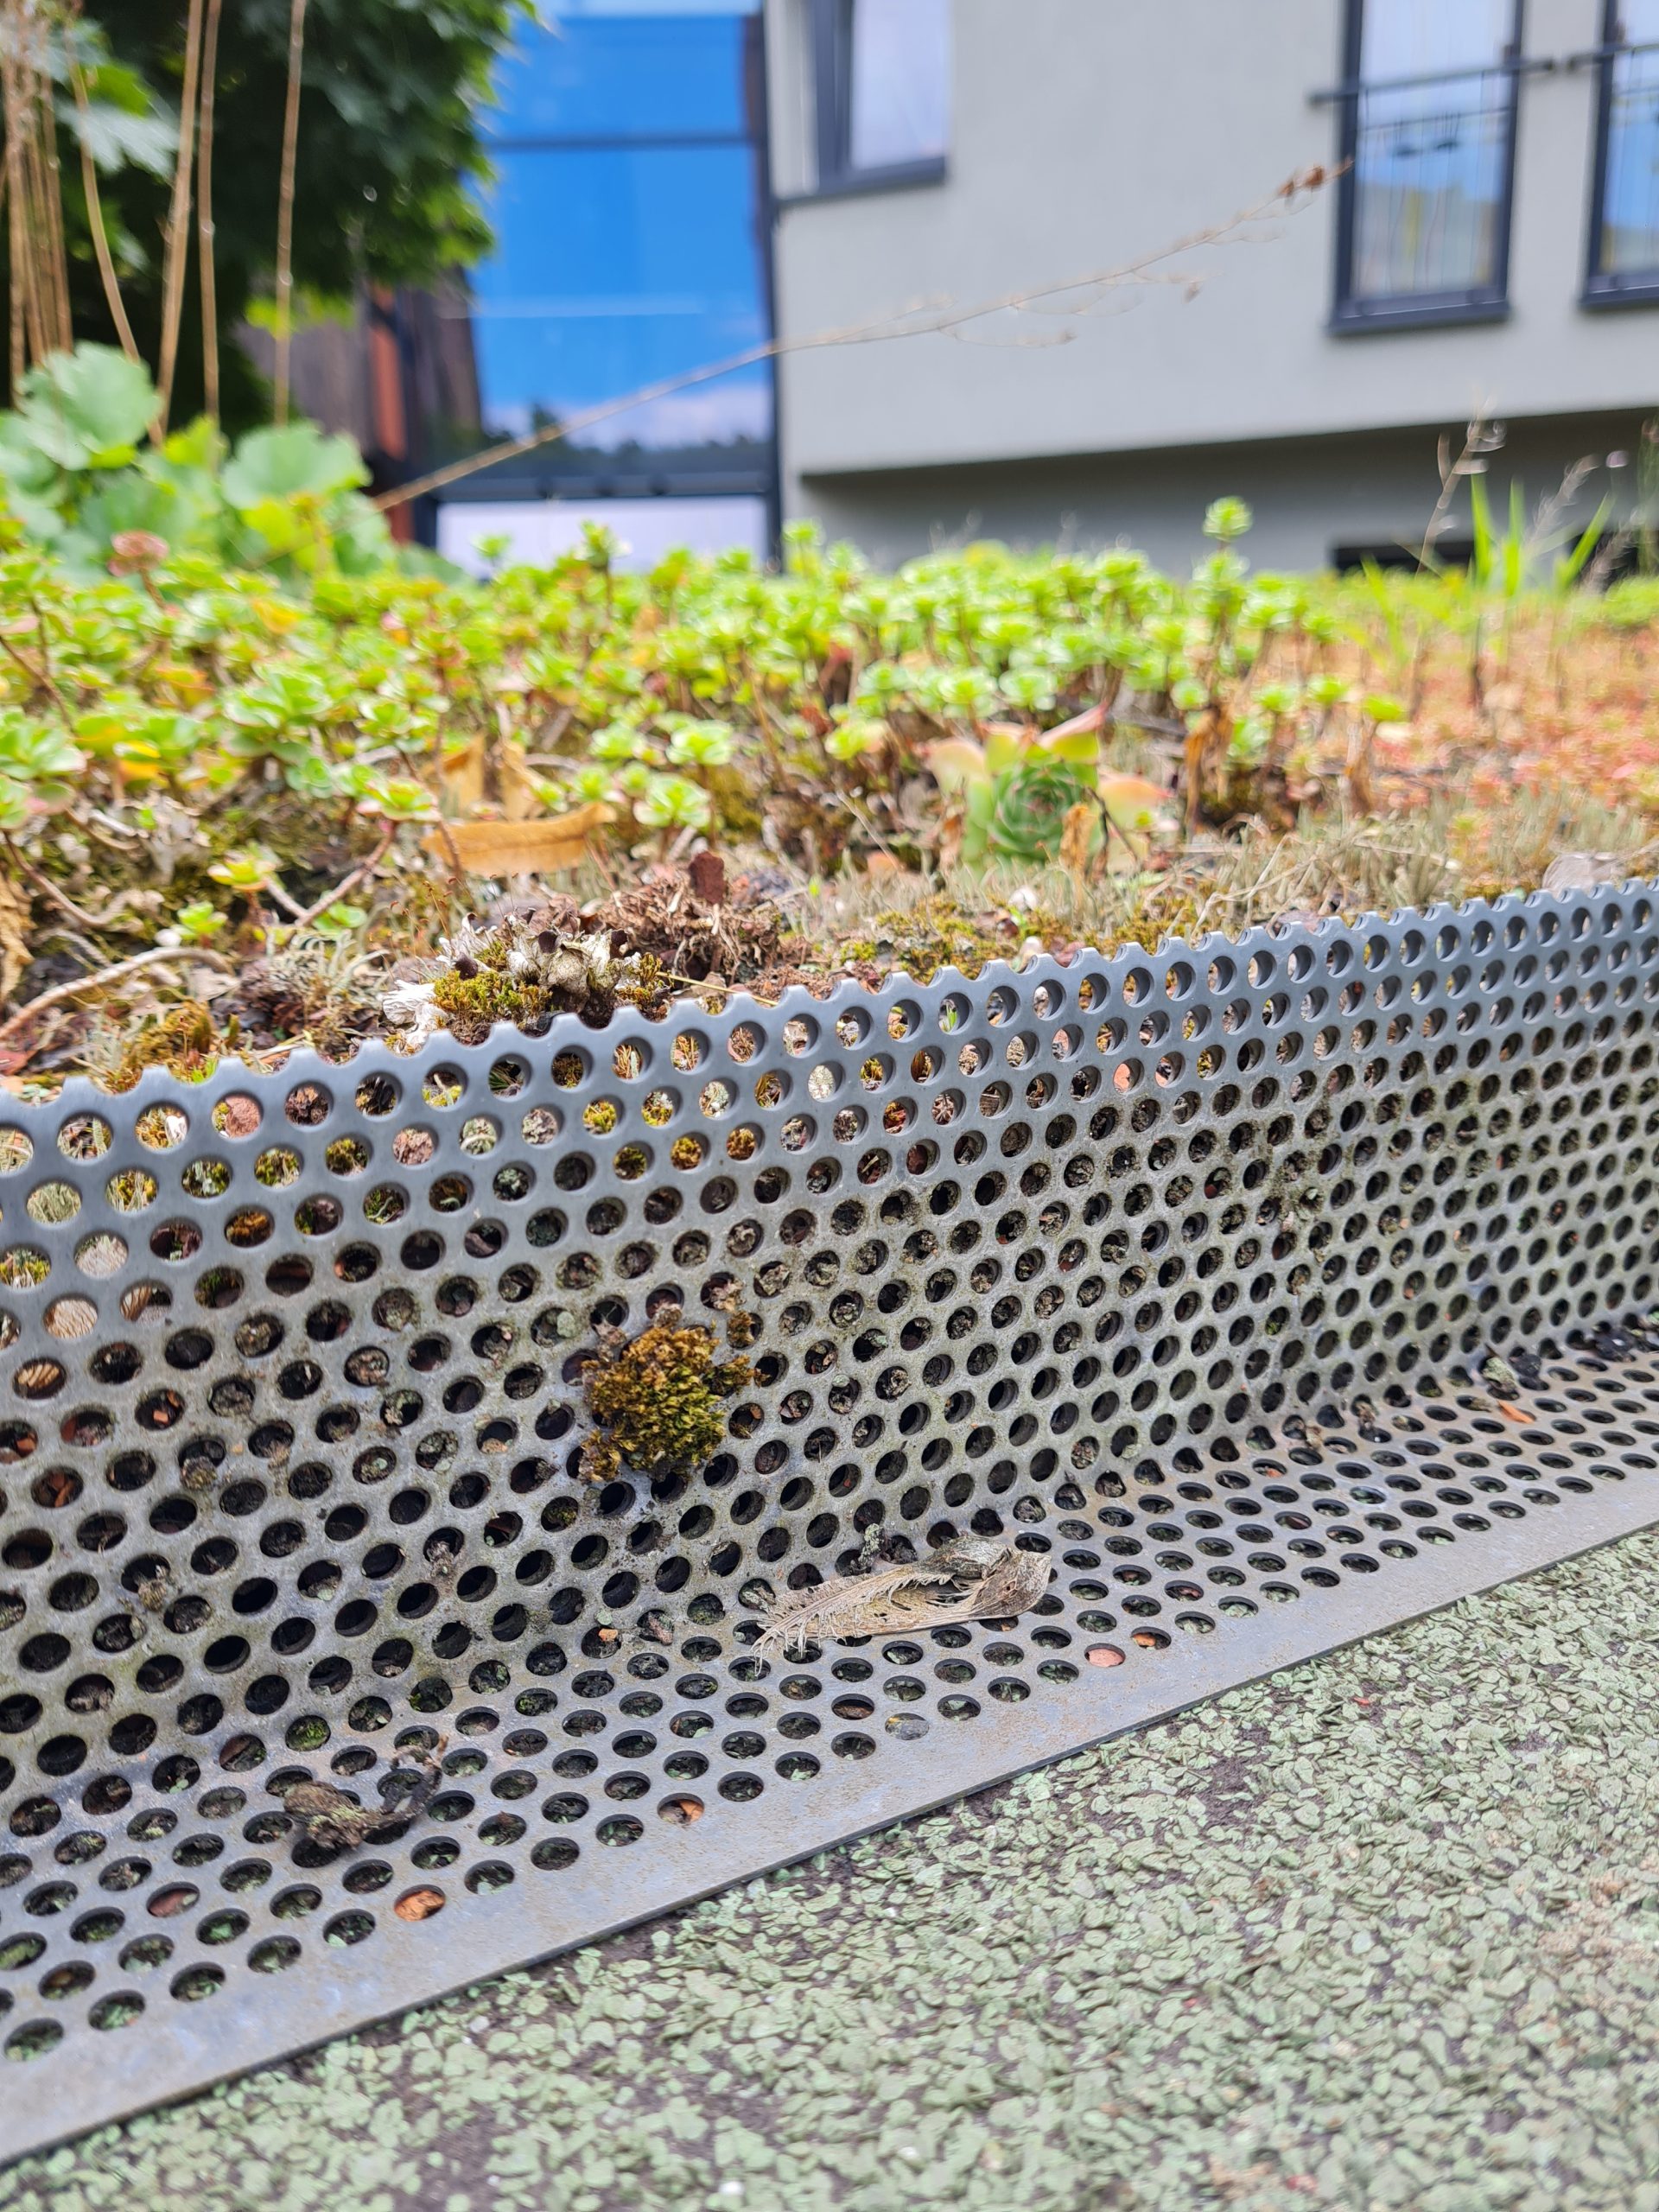 Das Bild zeigt das bepflanzte Substrat eines extensiven Gründachs, das mit Hilfe eines Gitters vom Abrutschen abgehalten wird.